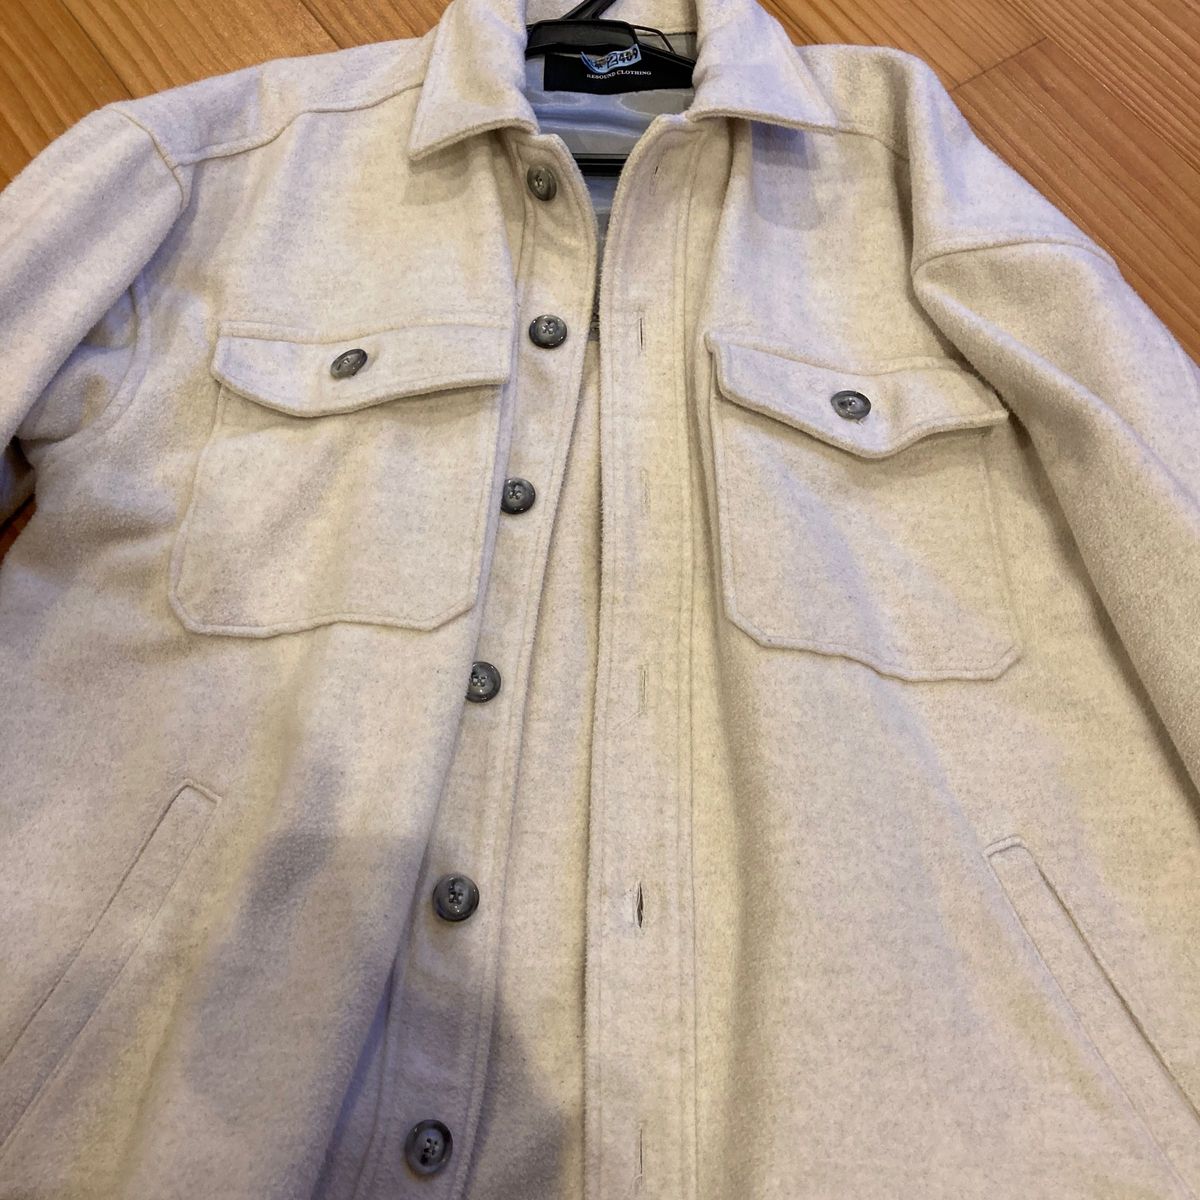 RESOUND CLOTHING リサウンドクロージングのオーバーサイズシルエットのCPOジャケット シャツジャケット